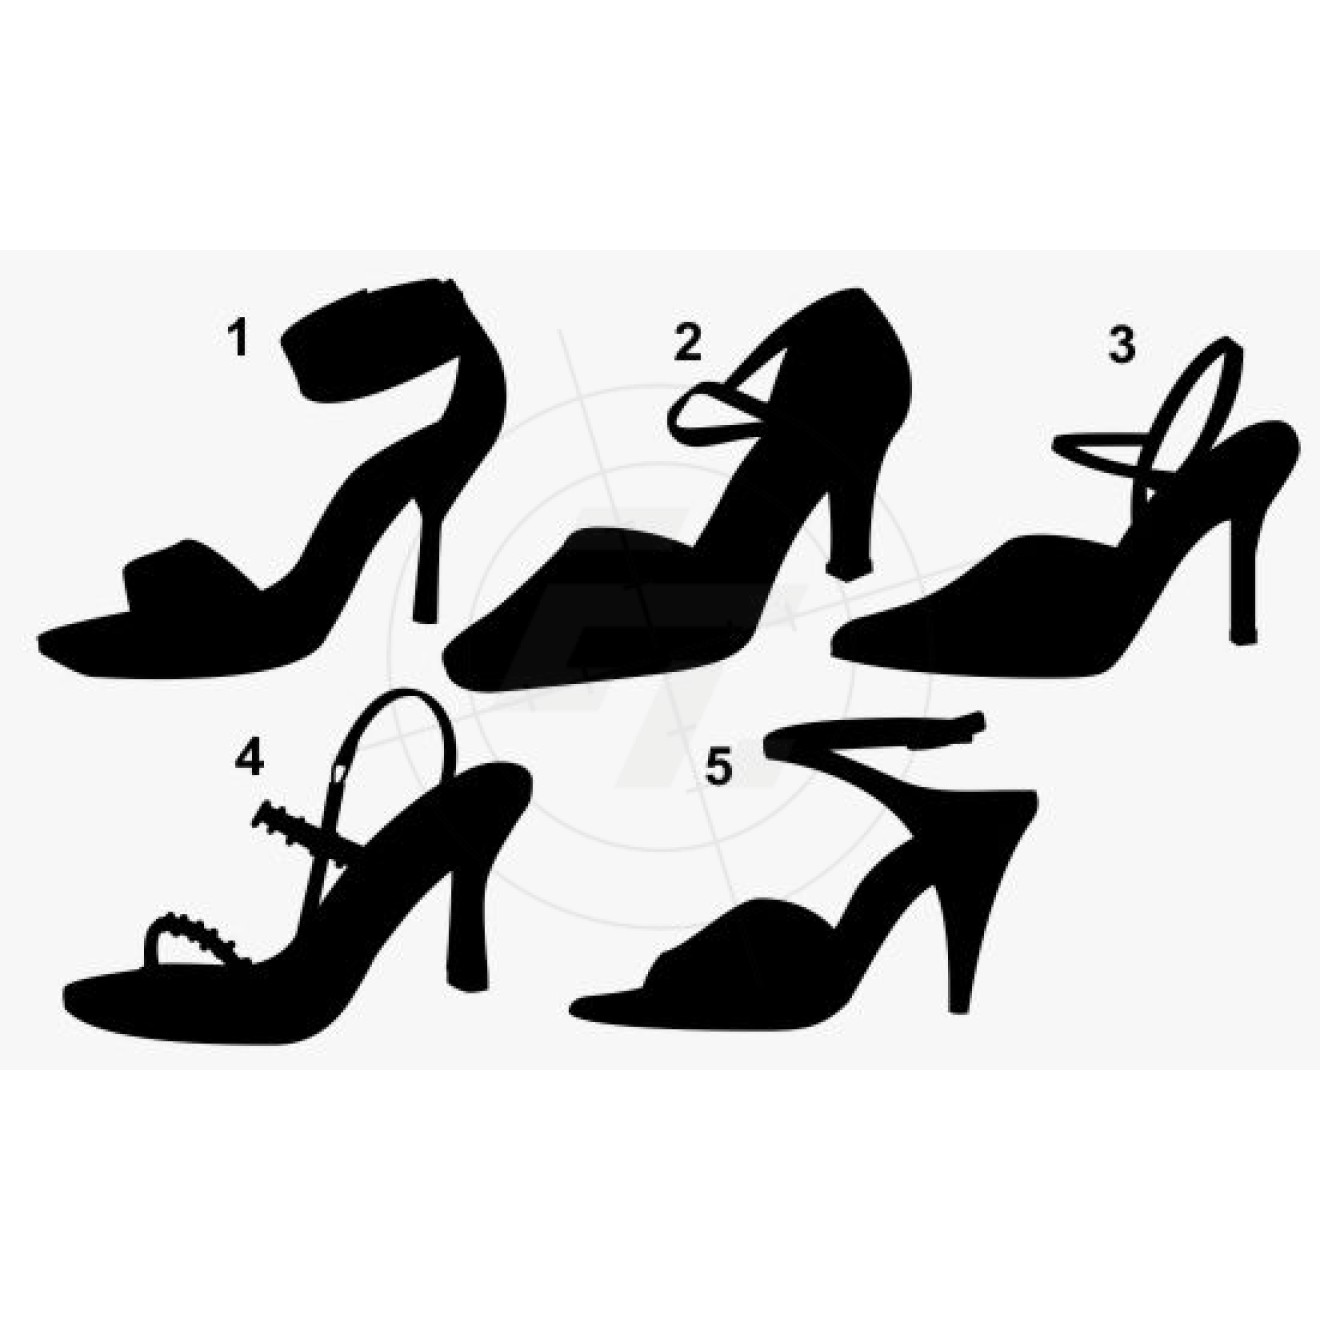 Shoes, ladies shoes, elegant dance shoes